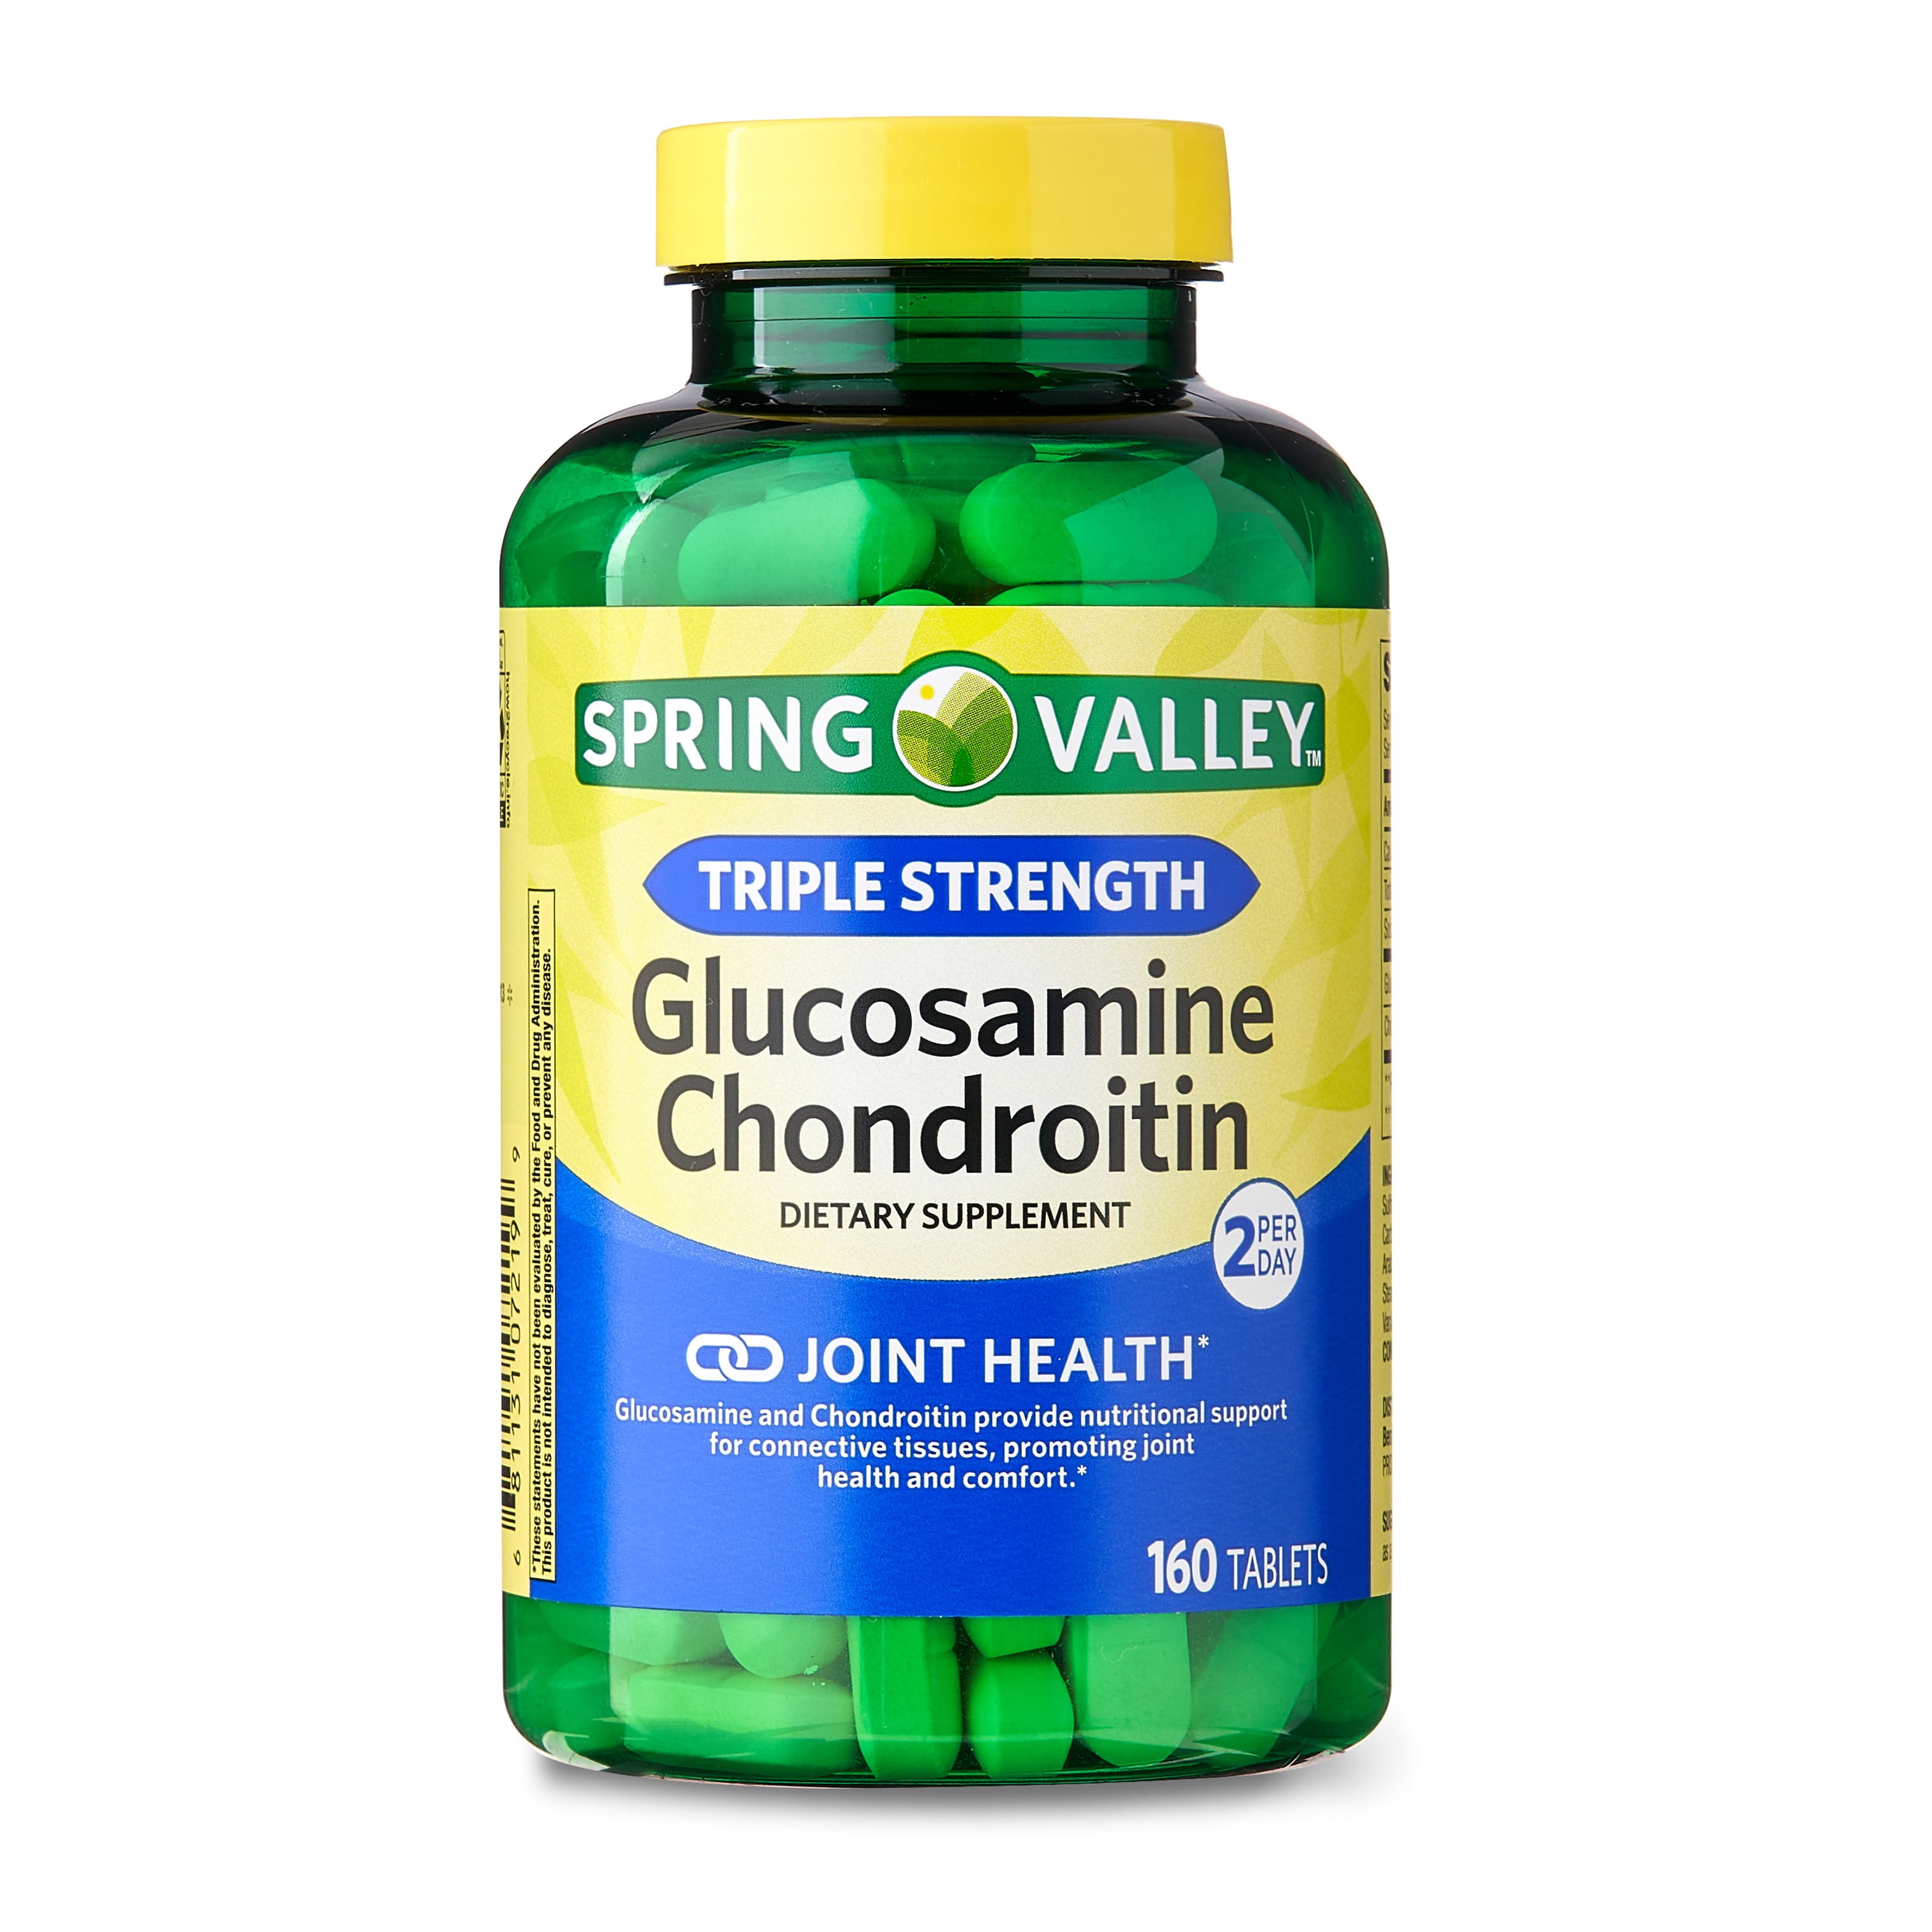 Глюкозамин хондроитин отзывы врачей. Sh. Glucosamine Chondroitine Tablet. 1. Chondroitin Glucosamine Comple - 3 шт - $25.45. Солудон глюкозамин.